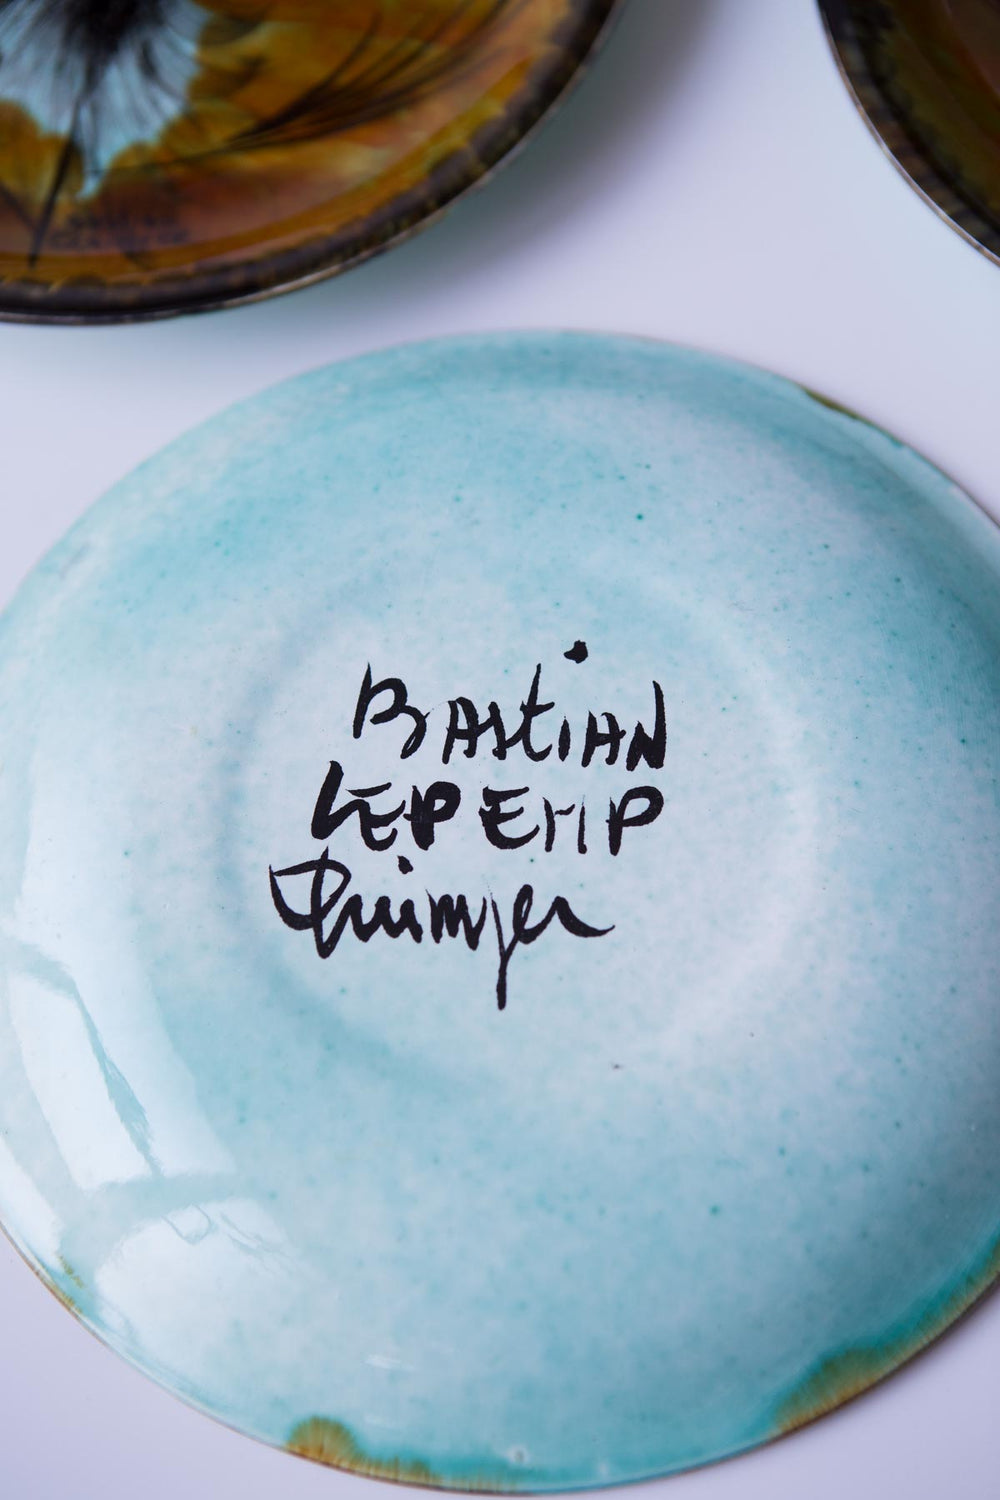 Vajilla cerámica Le Pemp Quimper  (VENDIDA)